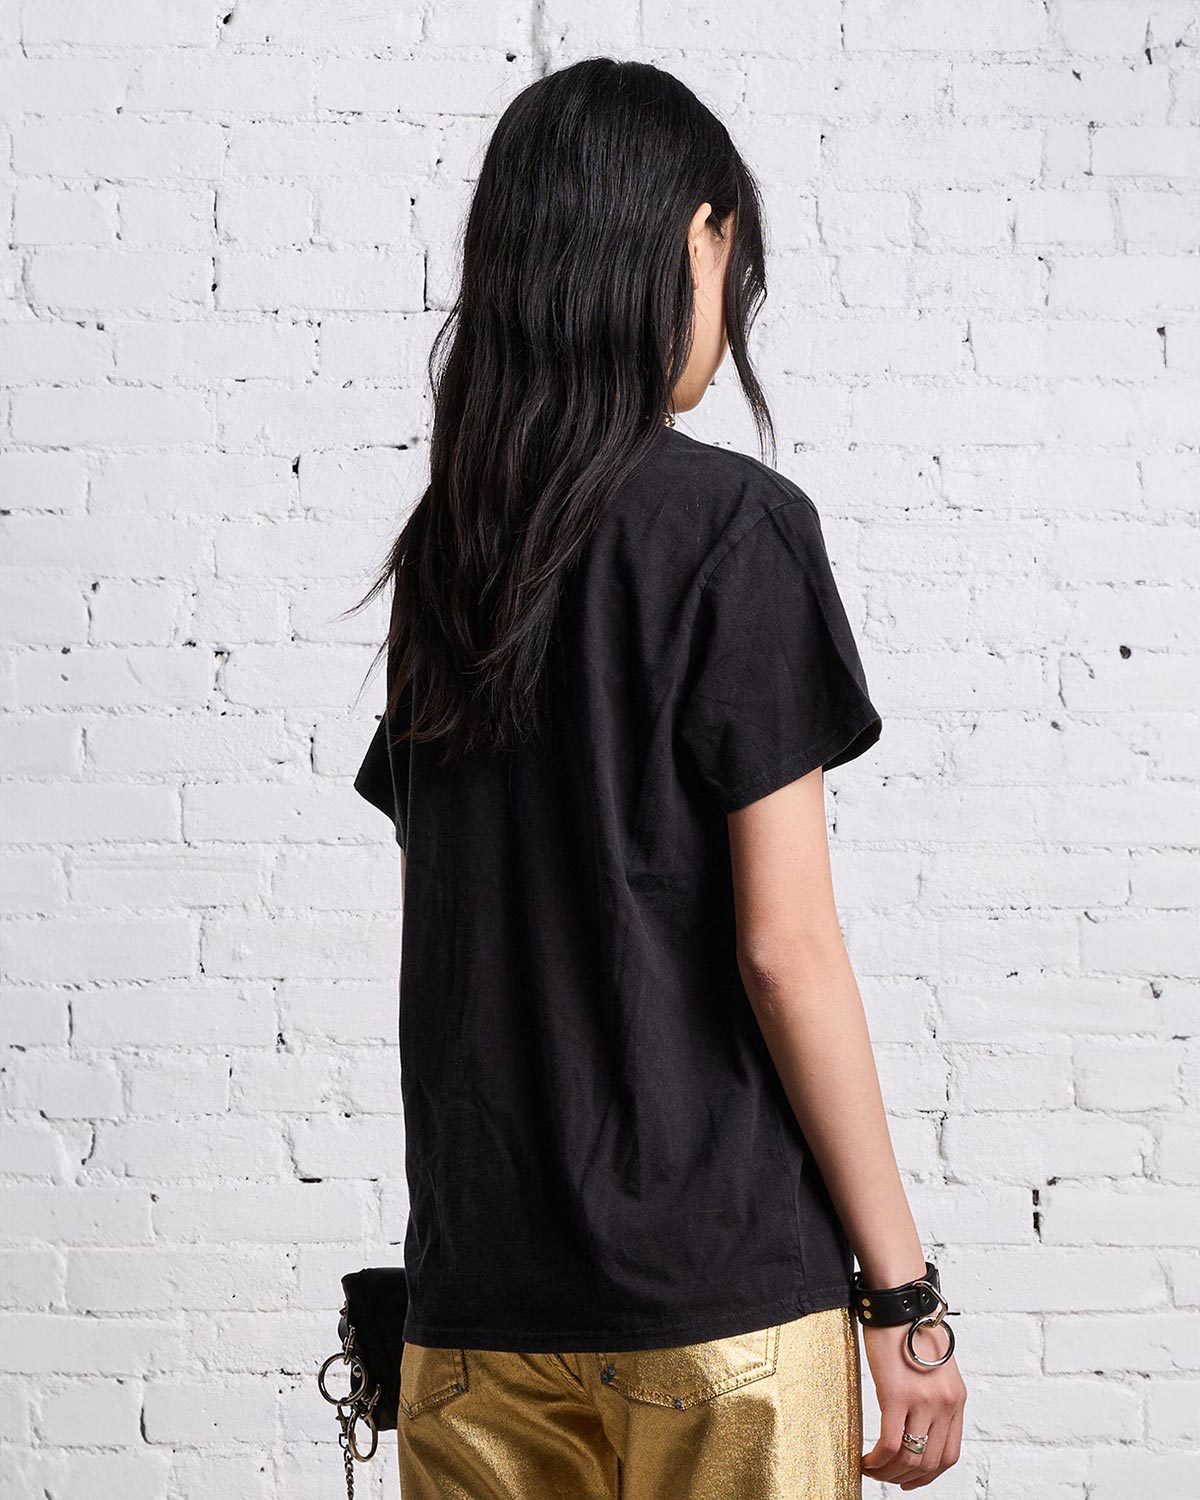 Tee-shirt manches courtes en coton noir sérigraphie New-York R13. Porté de dos.